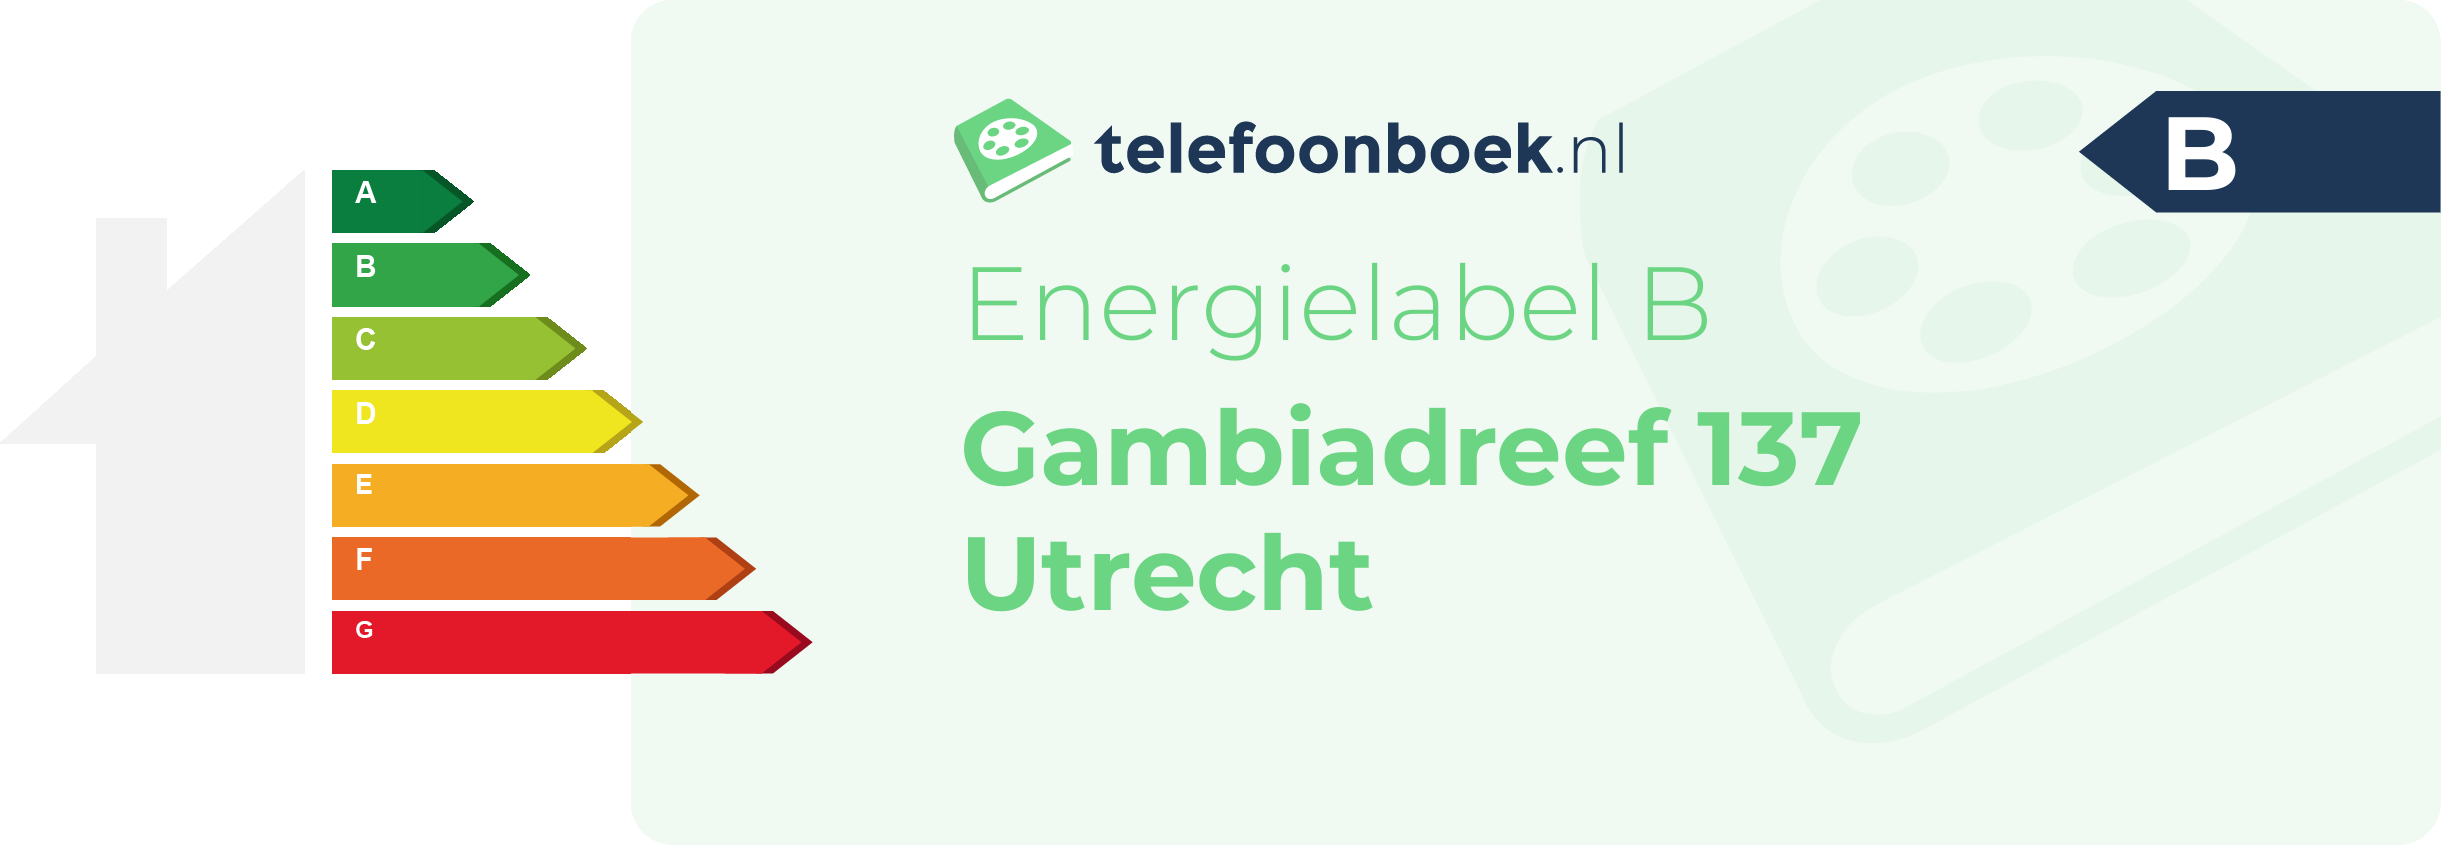 Energielabel Gambiadreef 137 Utrecht